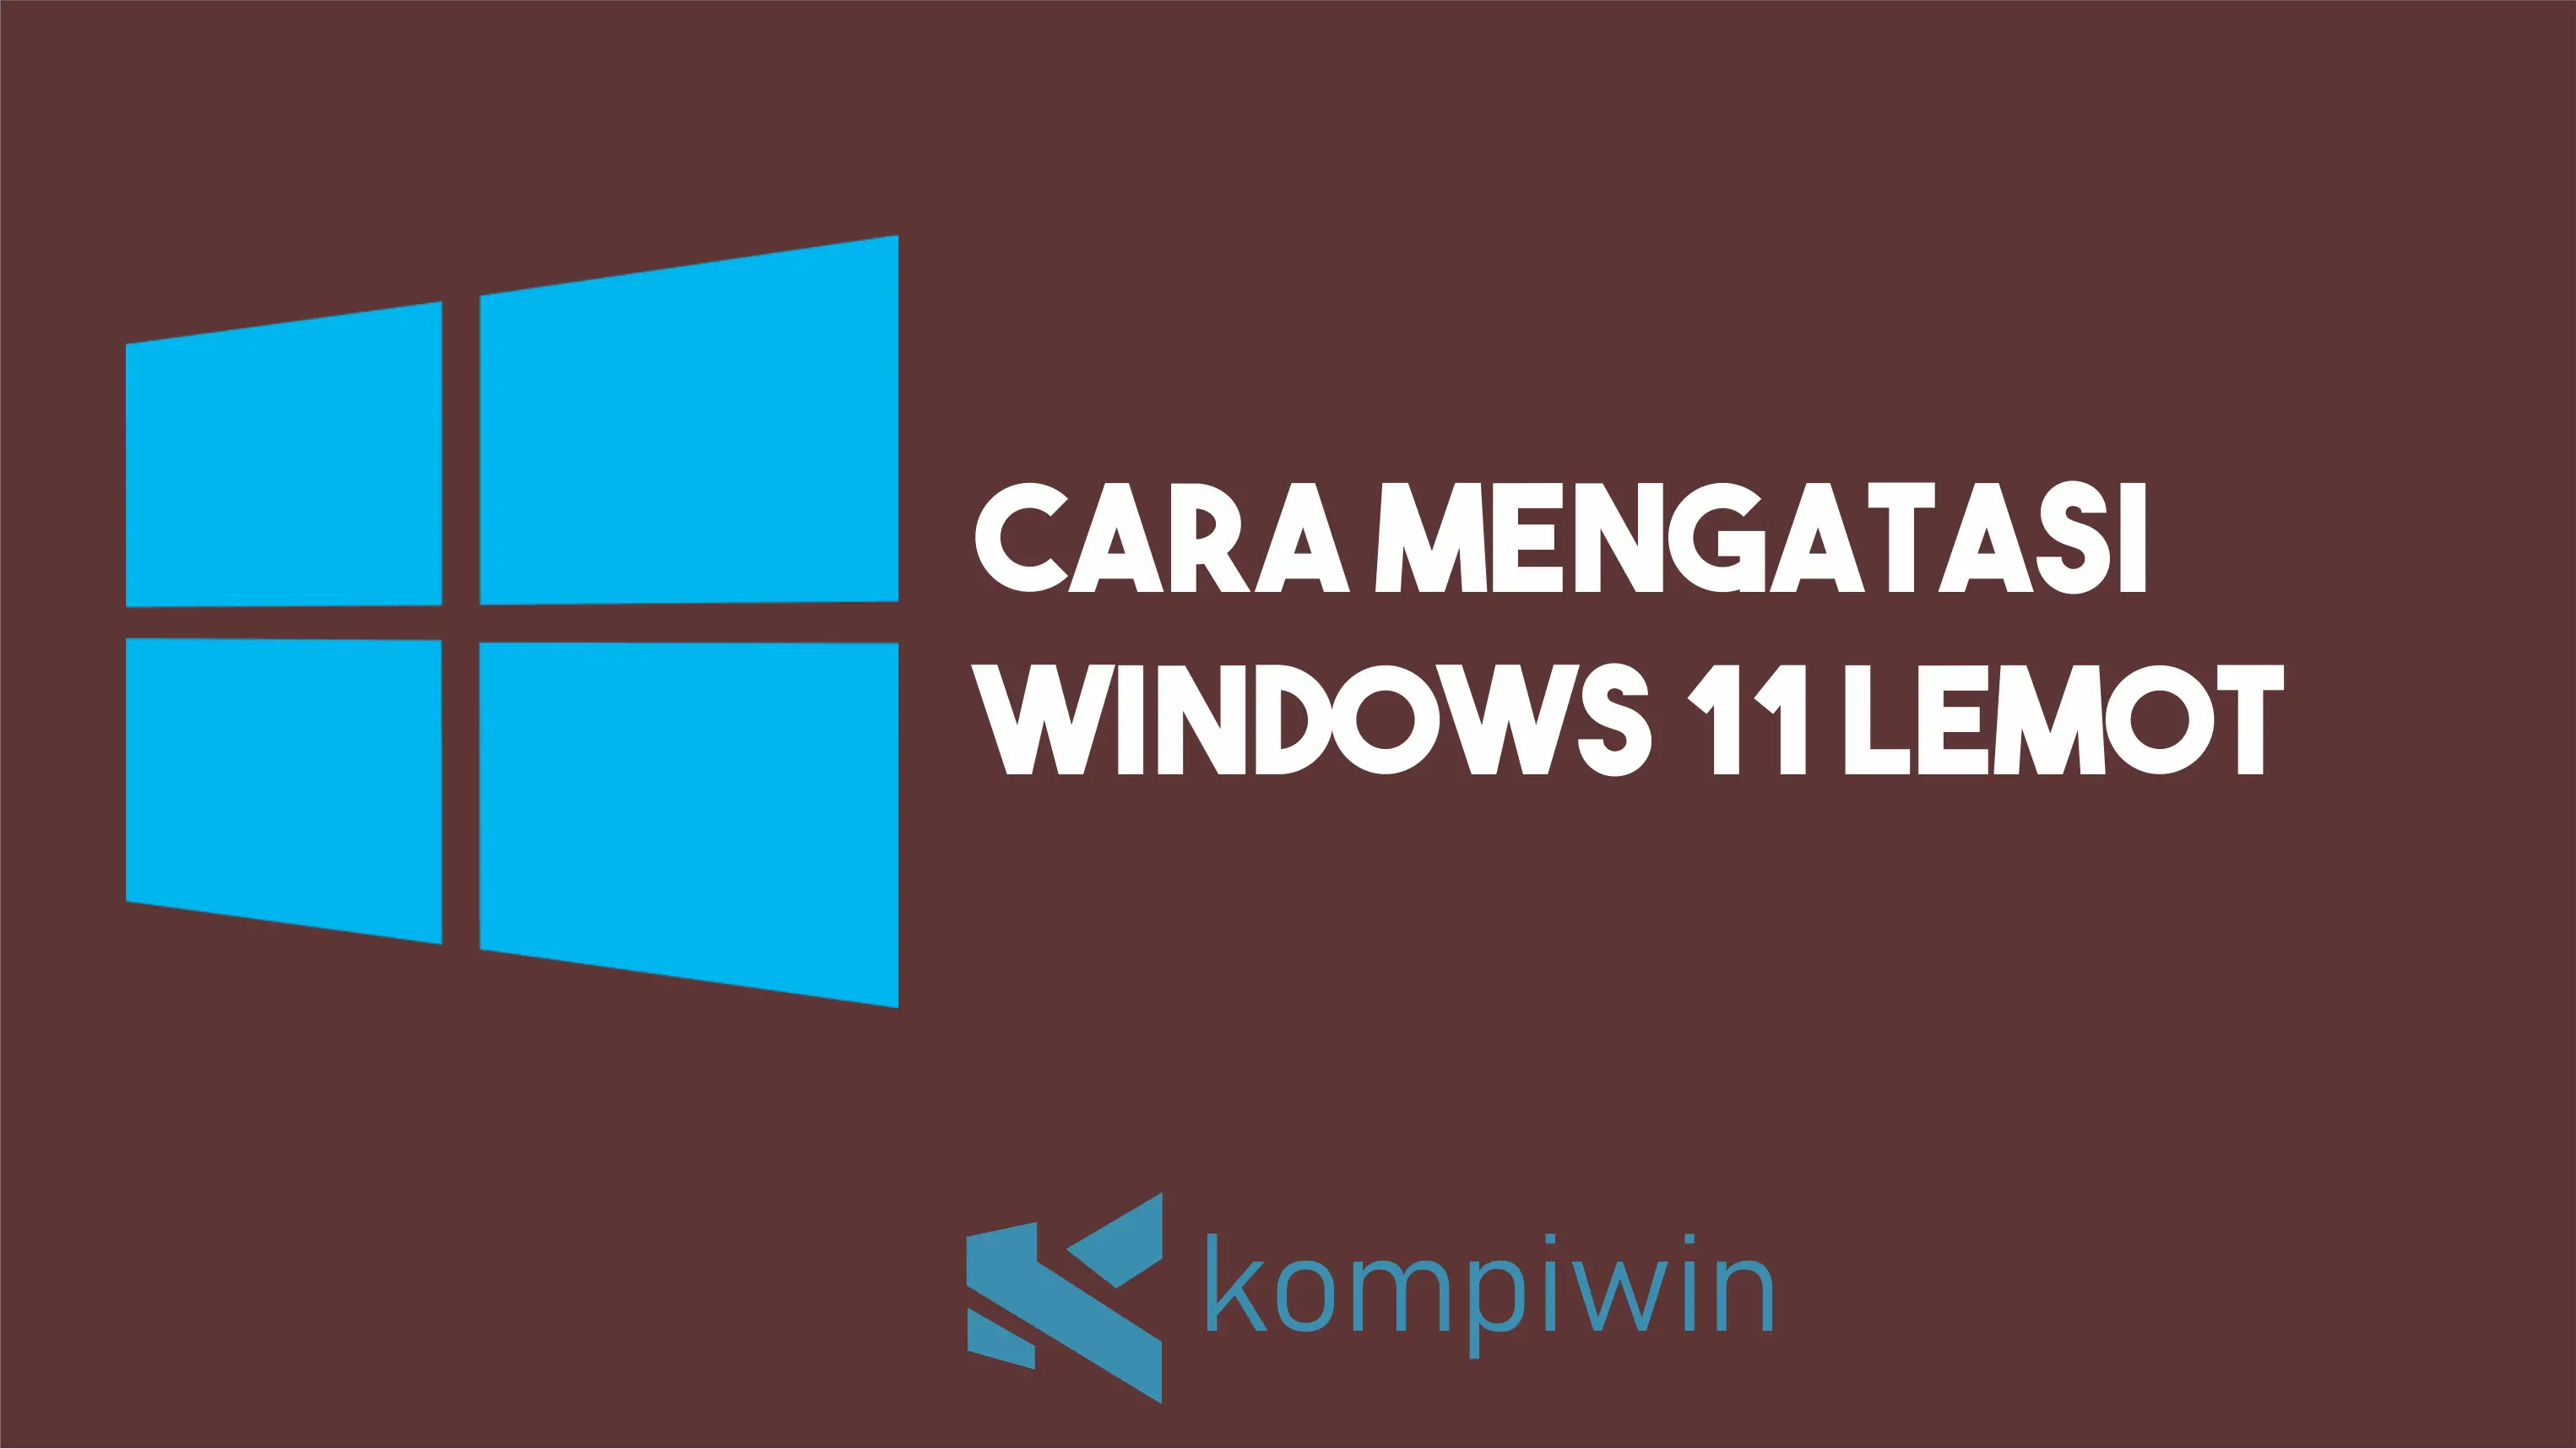 Cara Mengatasi Windows 11 Lemot